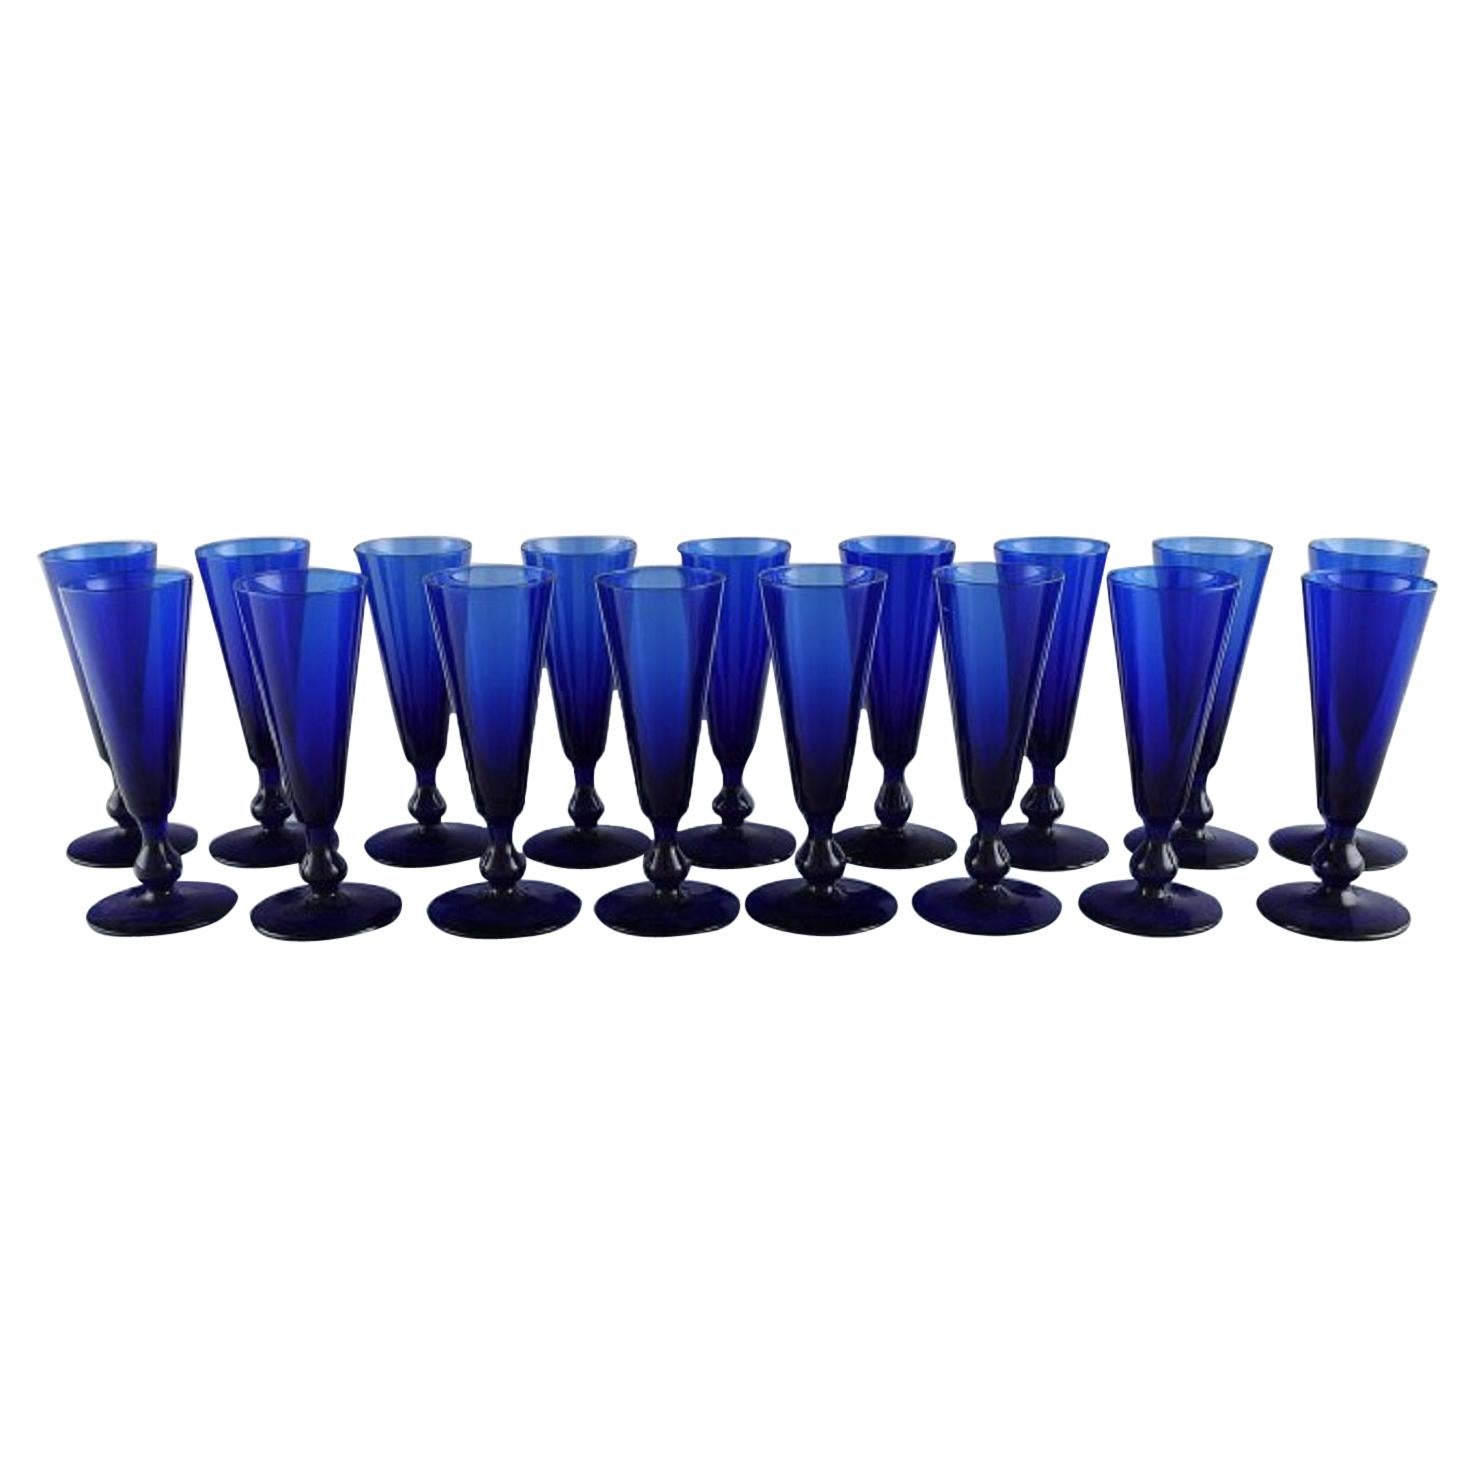 Monica Bratt für Reijmyre, 17 kleine Cocktailgläser aus mundgeblasenem blauem mundgeblasenem Glas